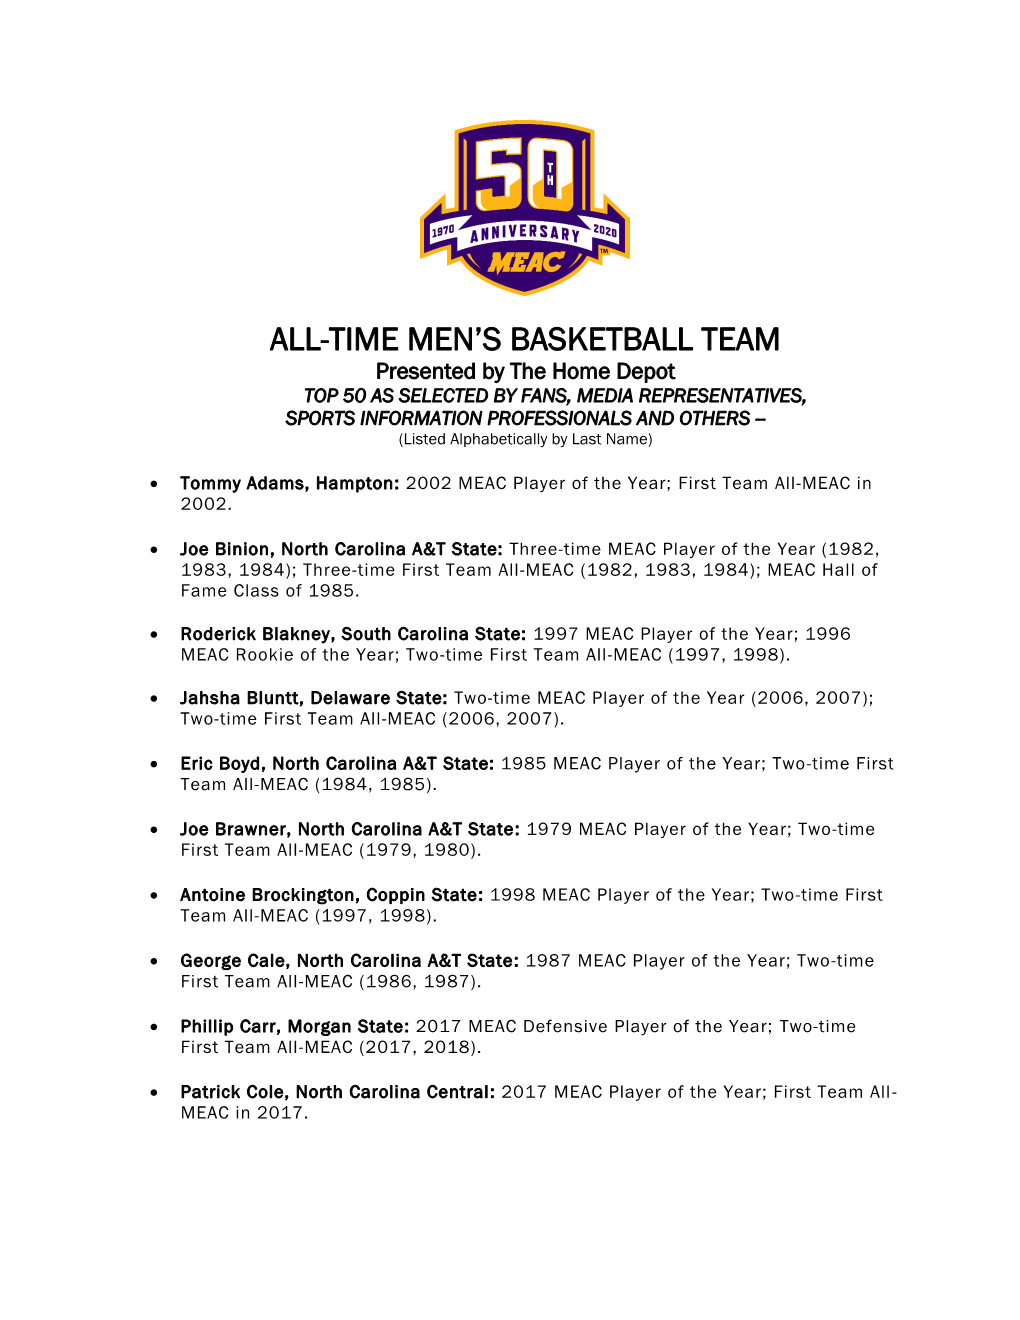 All-Time Men's Basketball Team